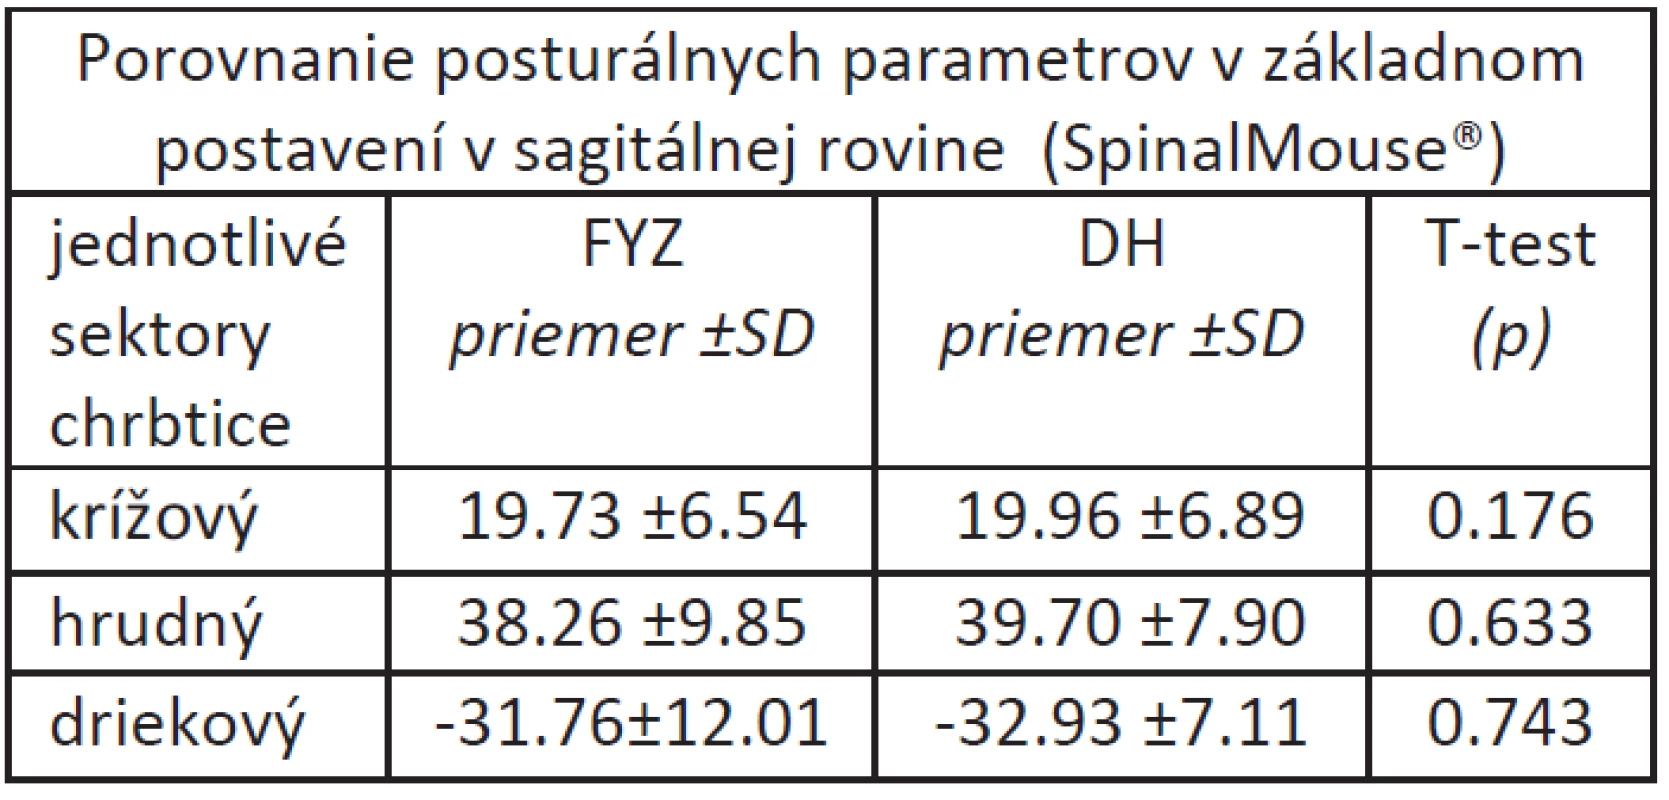 Priemerné hodnoty posturálnych parametrov v základnom postavení v sagitálnej rovine hodnotené pomocou SpinalMouse&lt;sup&gt;®&lt;/sup&gt;.